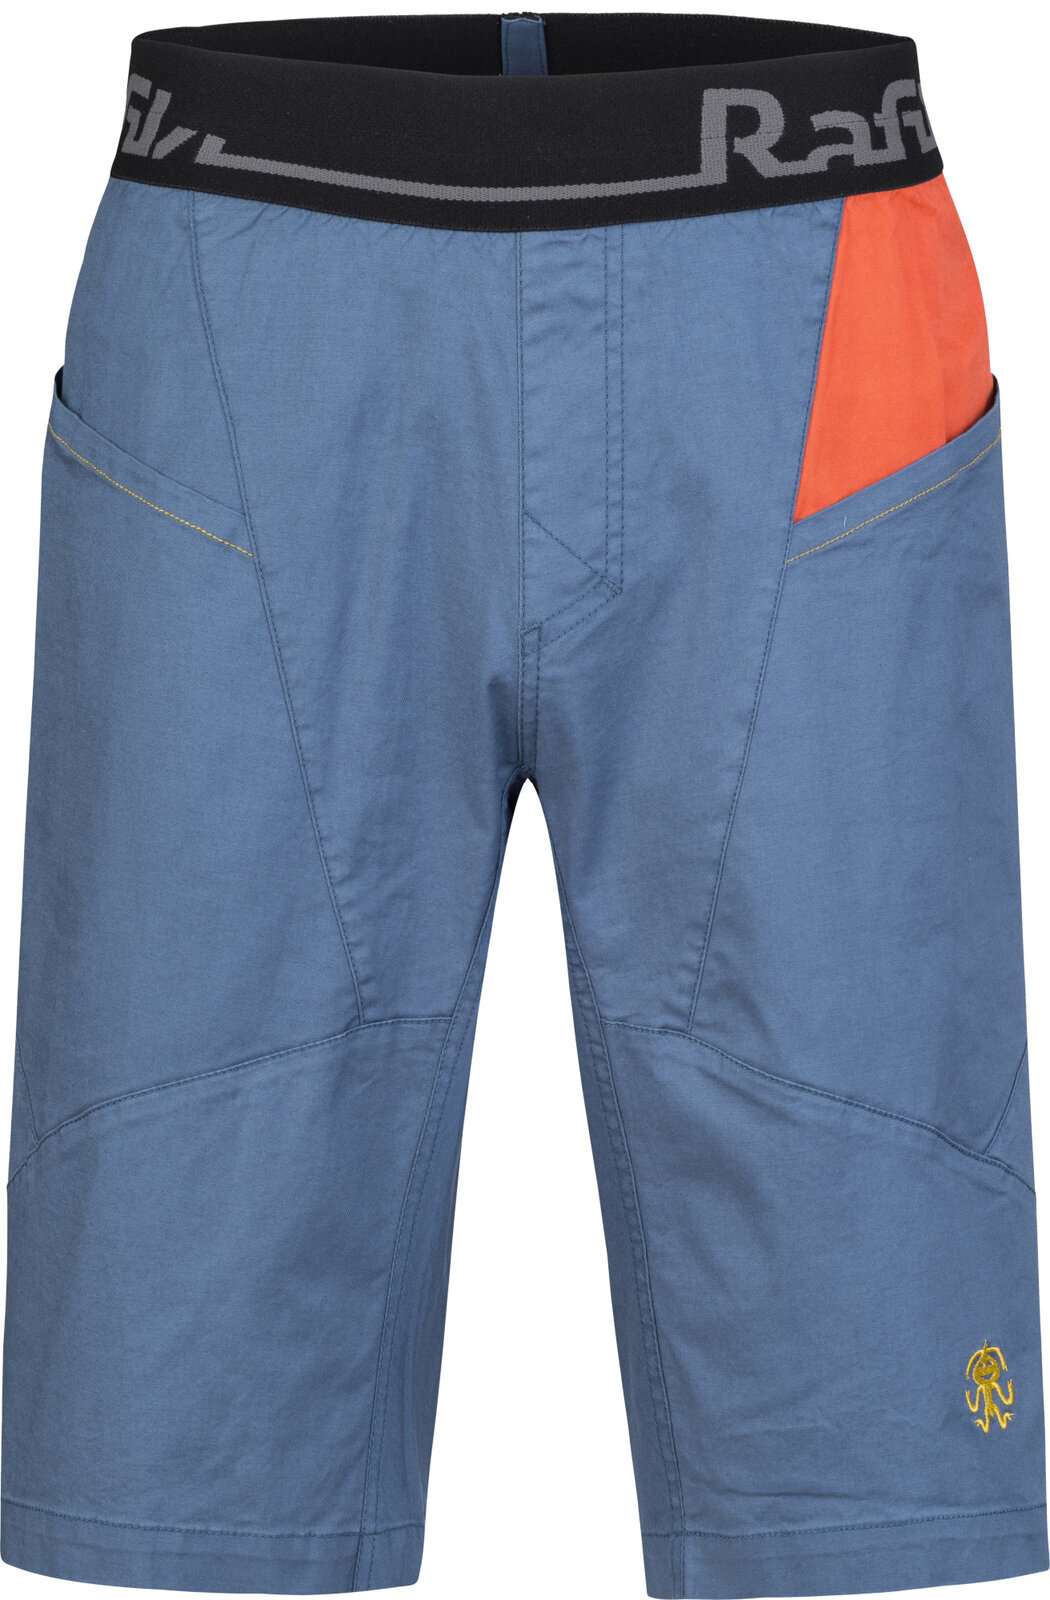 Spodenki outdoorowe Rafiki Megos Man Shorts Ensign Blue/Clay M Spodenki outdoorowe